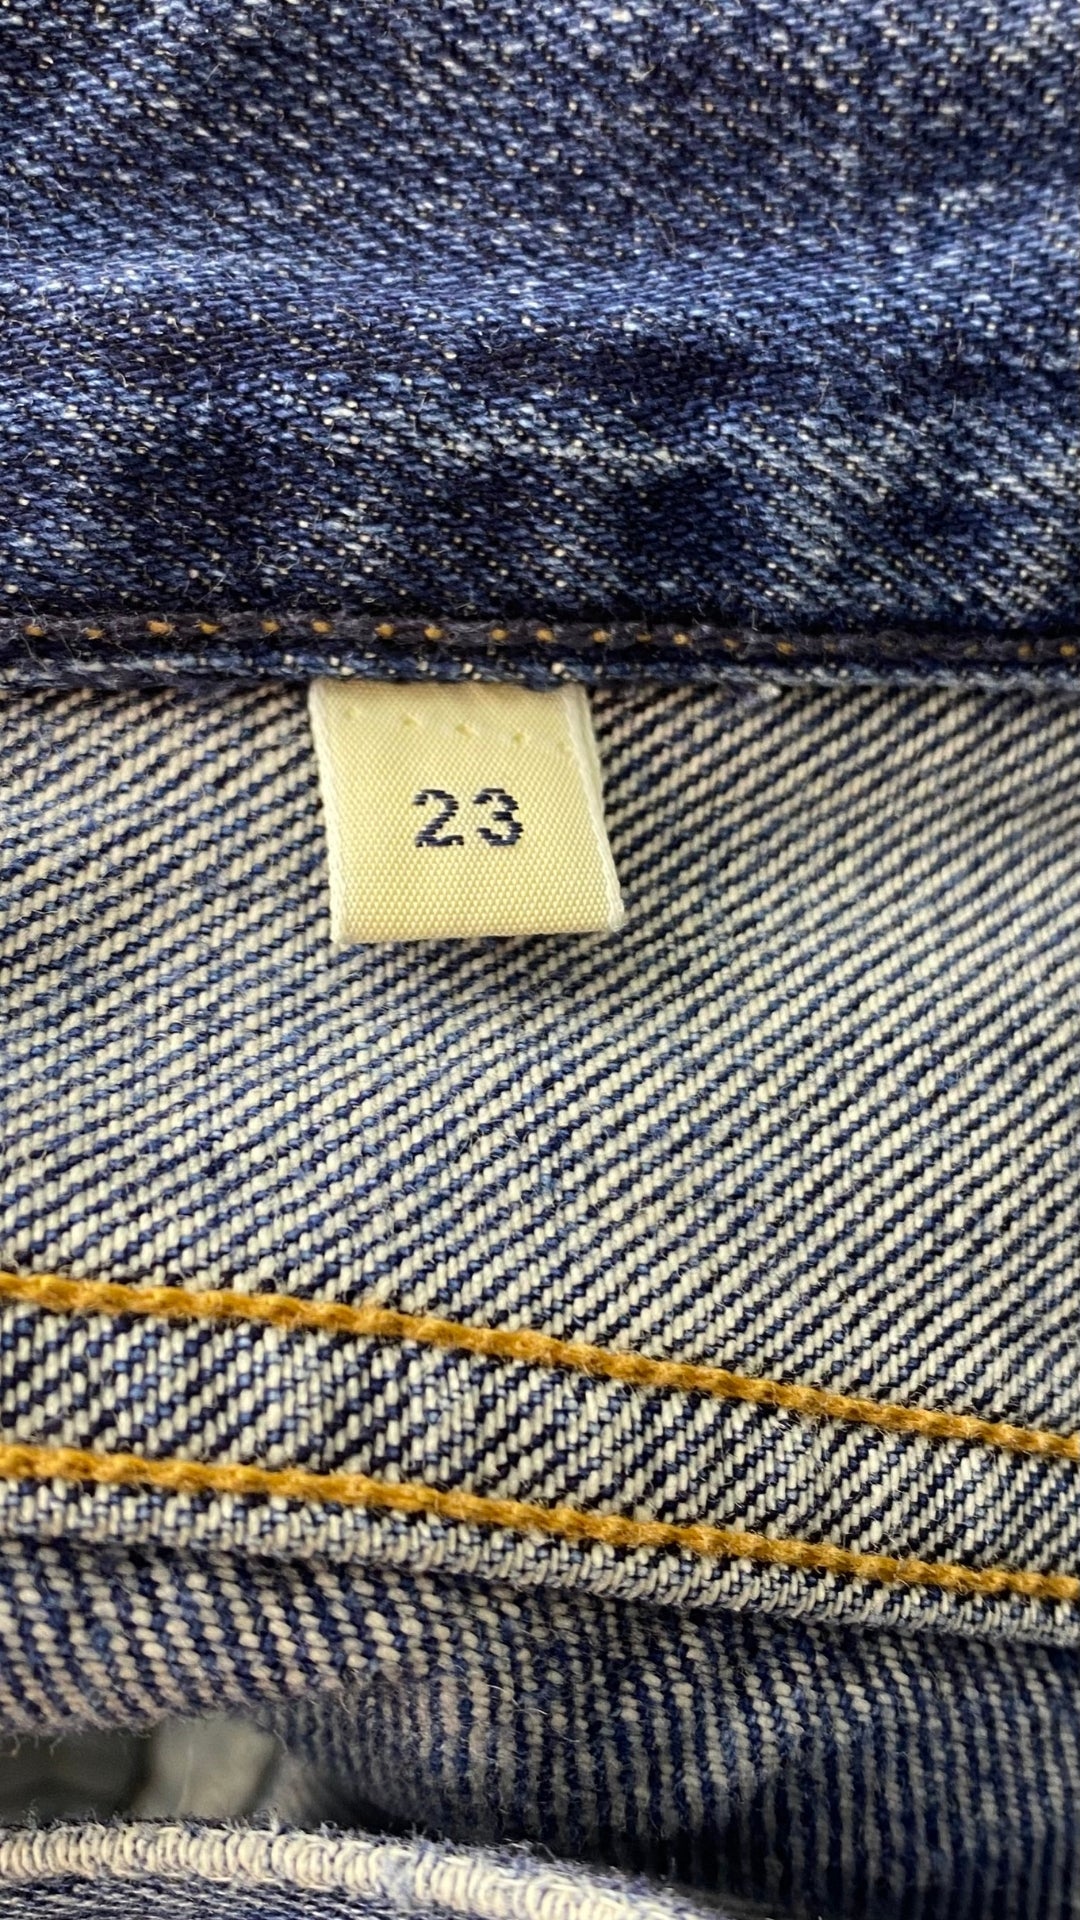 Jeans ajusté taille haute Citizens of Humanity, taille 23. Vue de l'étiquette de taille.